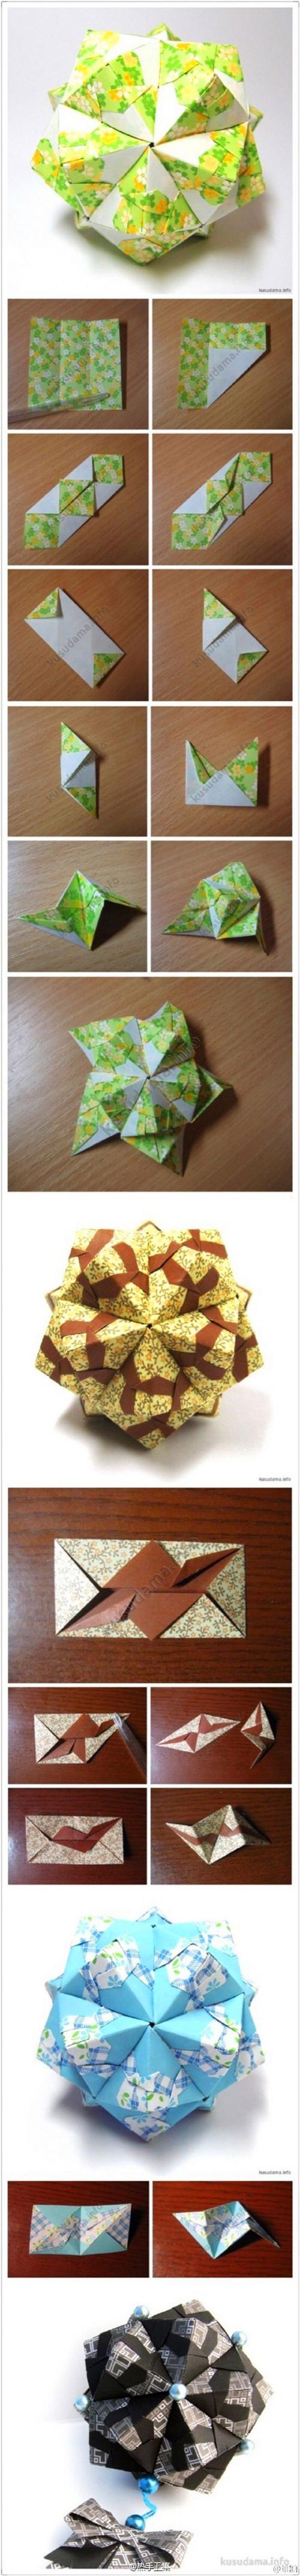 【教你折纸花球】 花球是纸艺中深受大家喜欢的手工折纸 简单容易上手